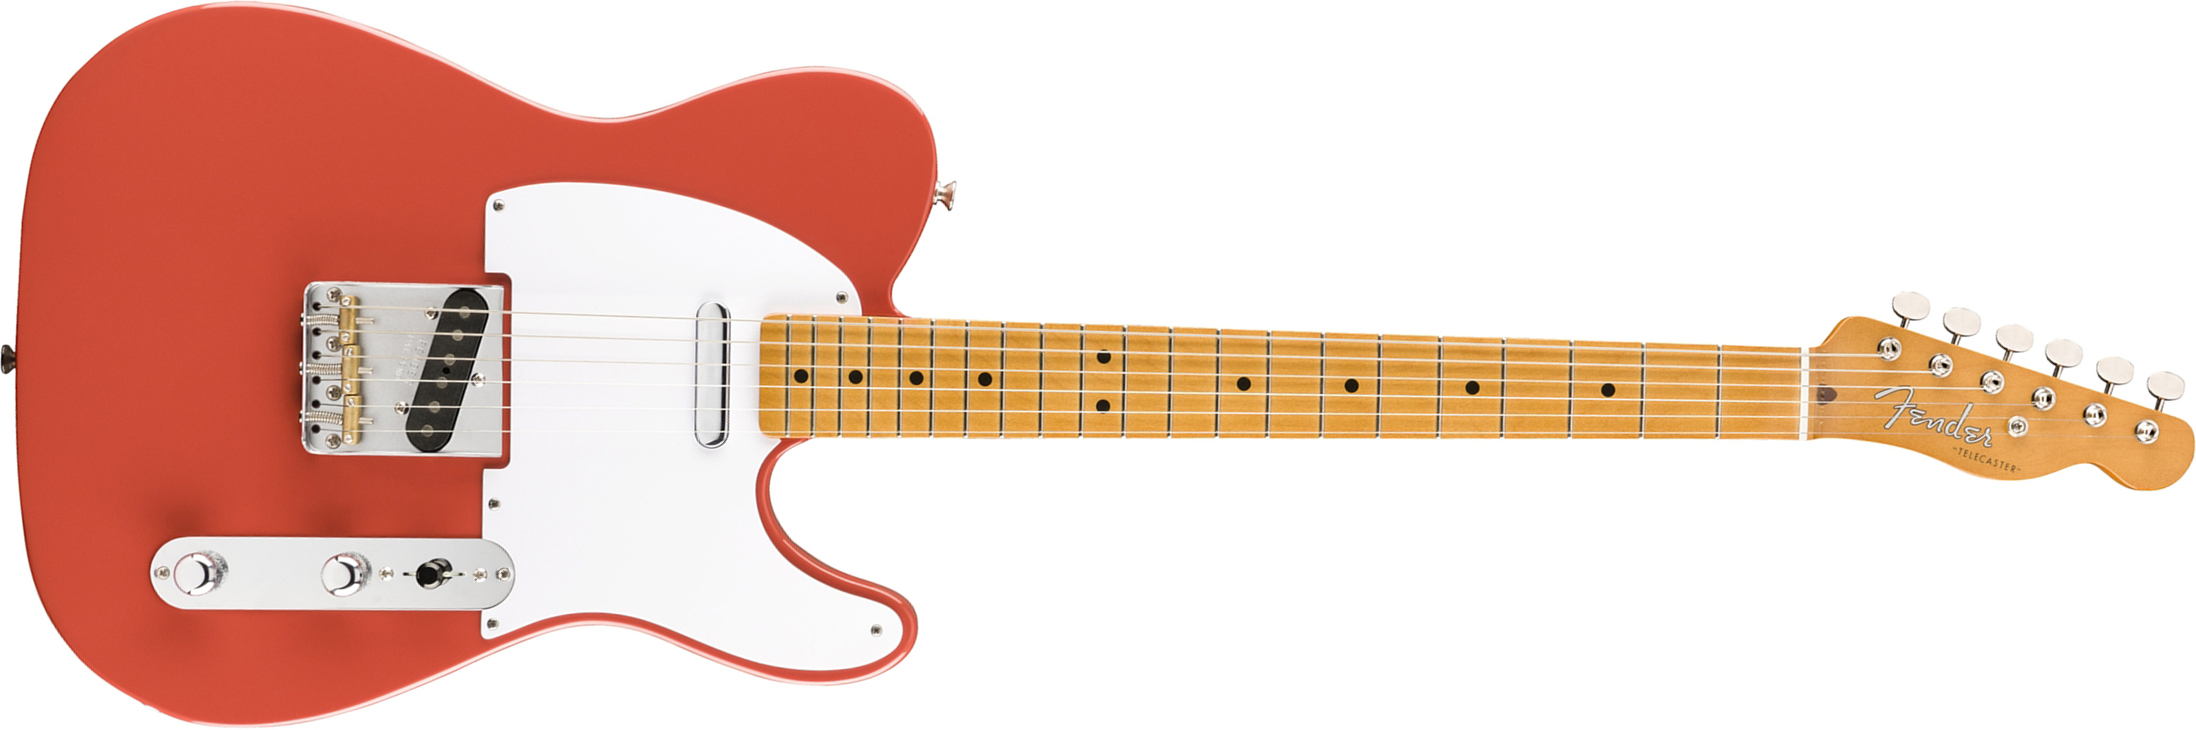 Fender Tele 50s Vintera Vintage Mex Mn - Fiesta Red - Televorm elektrische gitaar - Main picture